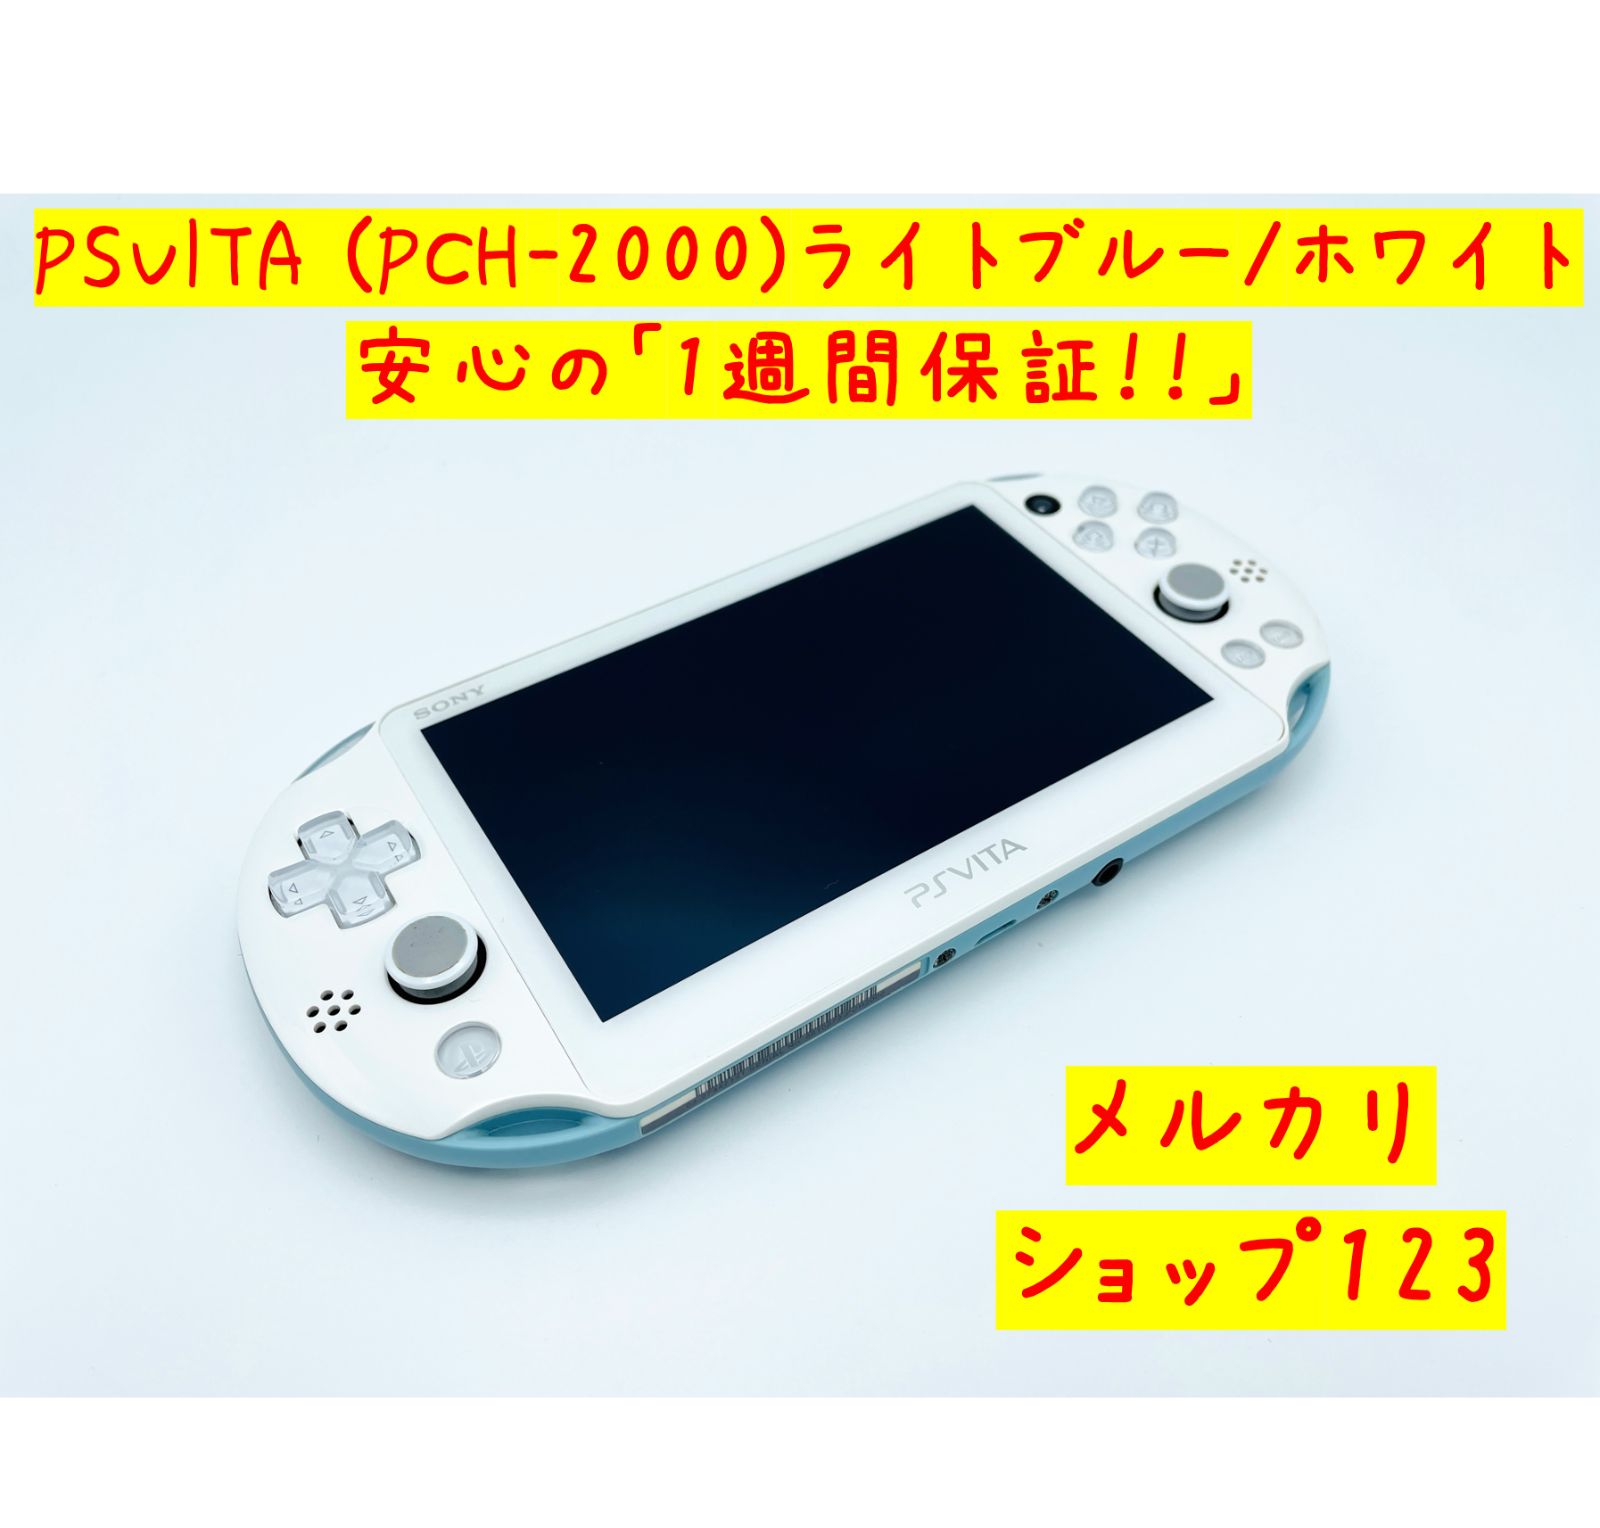 PSVITA 本体 Wi-Fiモデル ライトブルー/ホワイト PCH-2000 - メルカリ